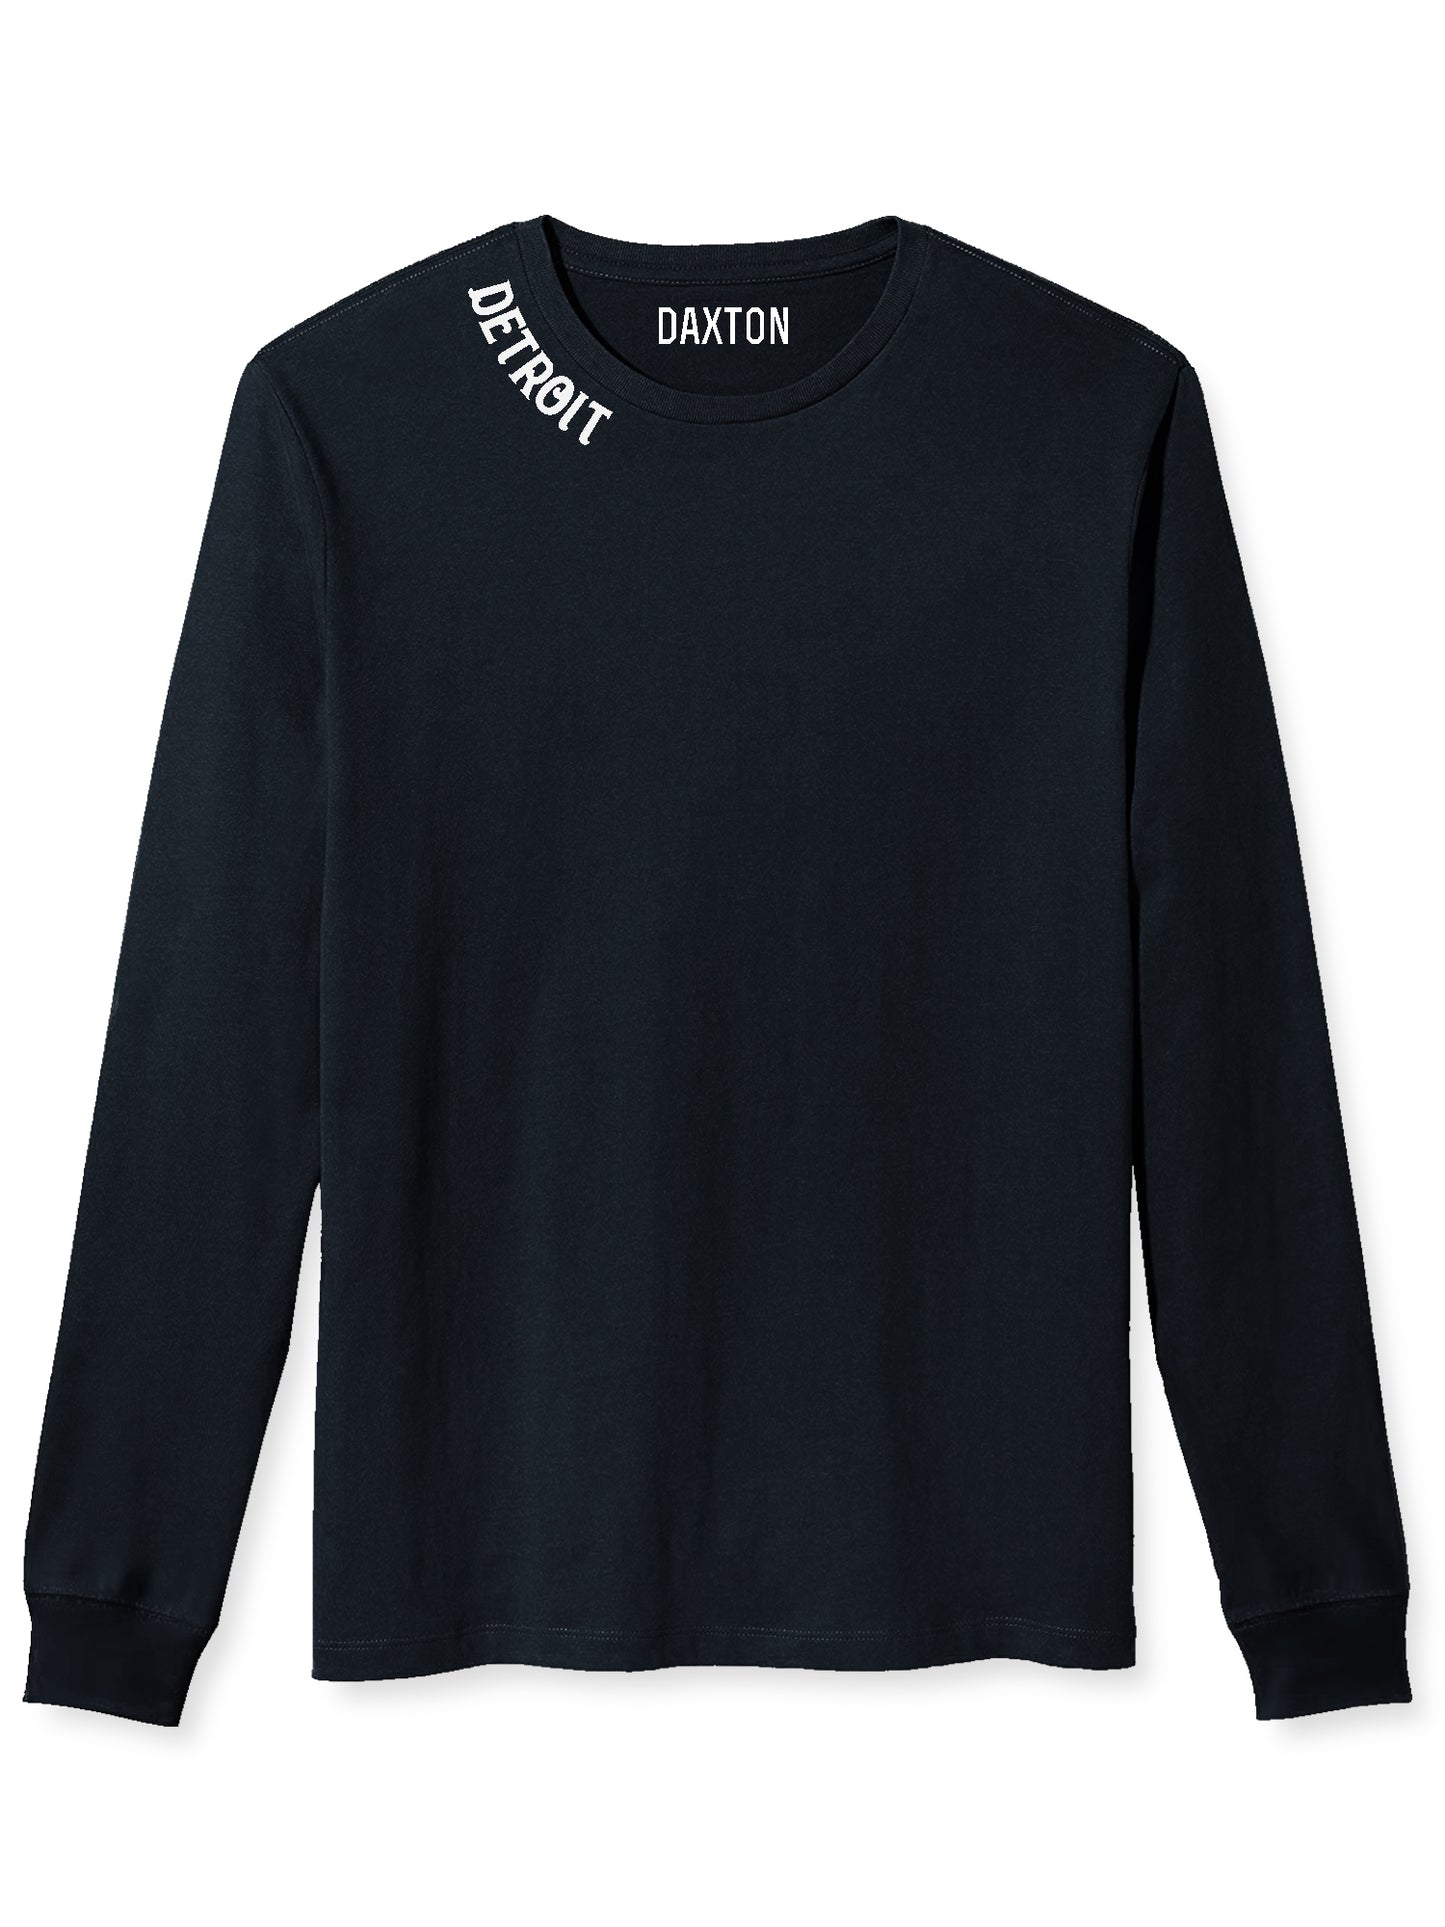 Daxton Premium Detroit Men Long Sleeves T Shirt Ultra Soft Medium Weight Cotton